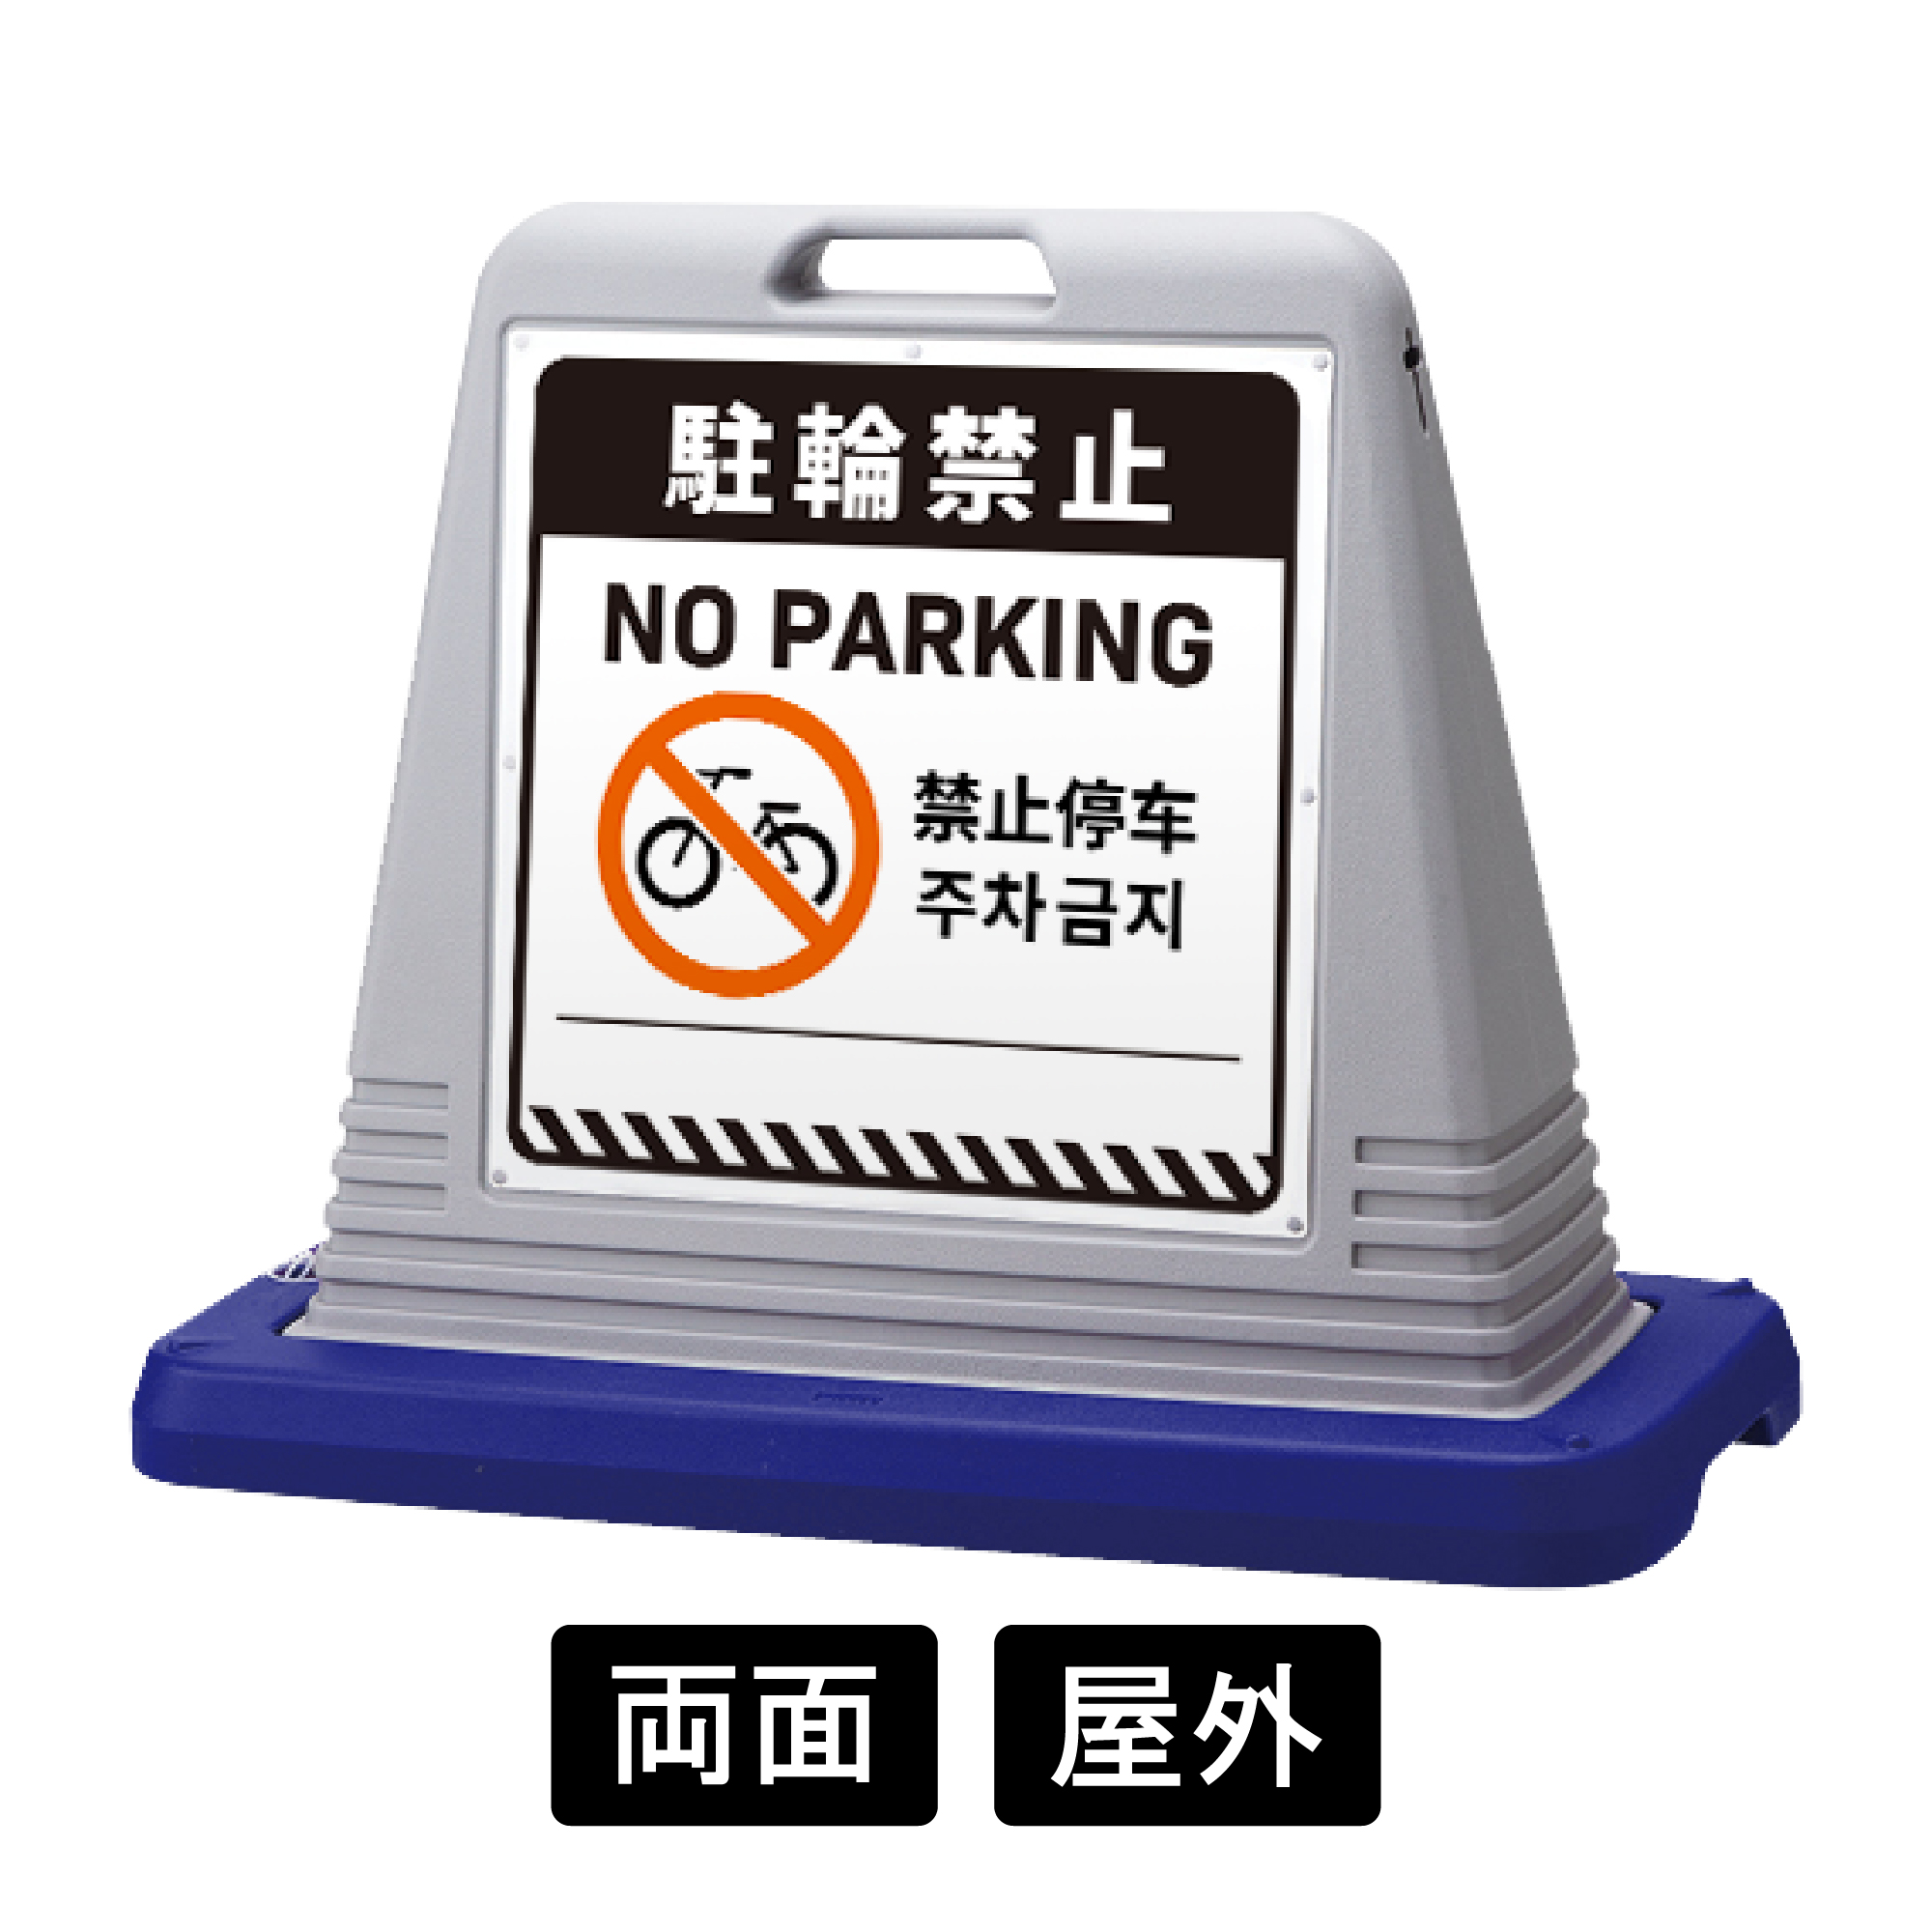 サインキューブ 「駐輪禁止」 両面表示 グレー SignWebオリジナル 多言語 ユニバーサルデザイン